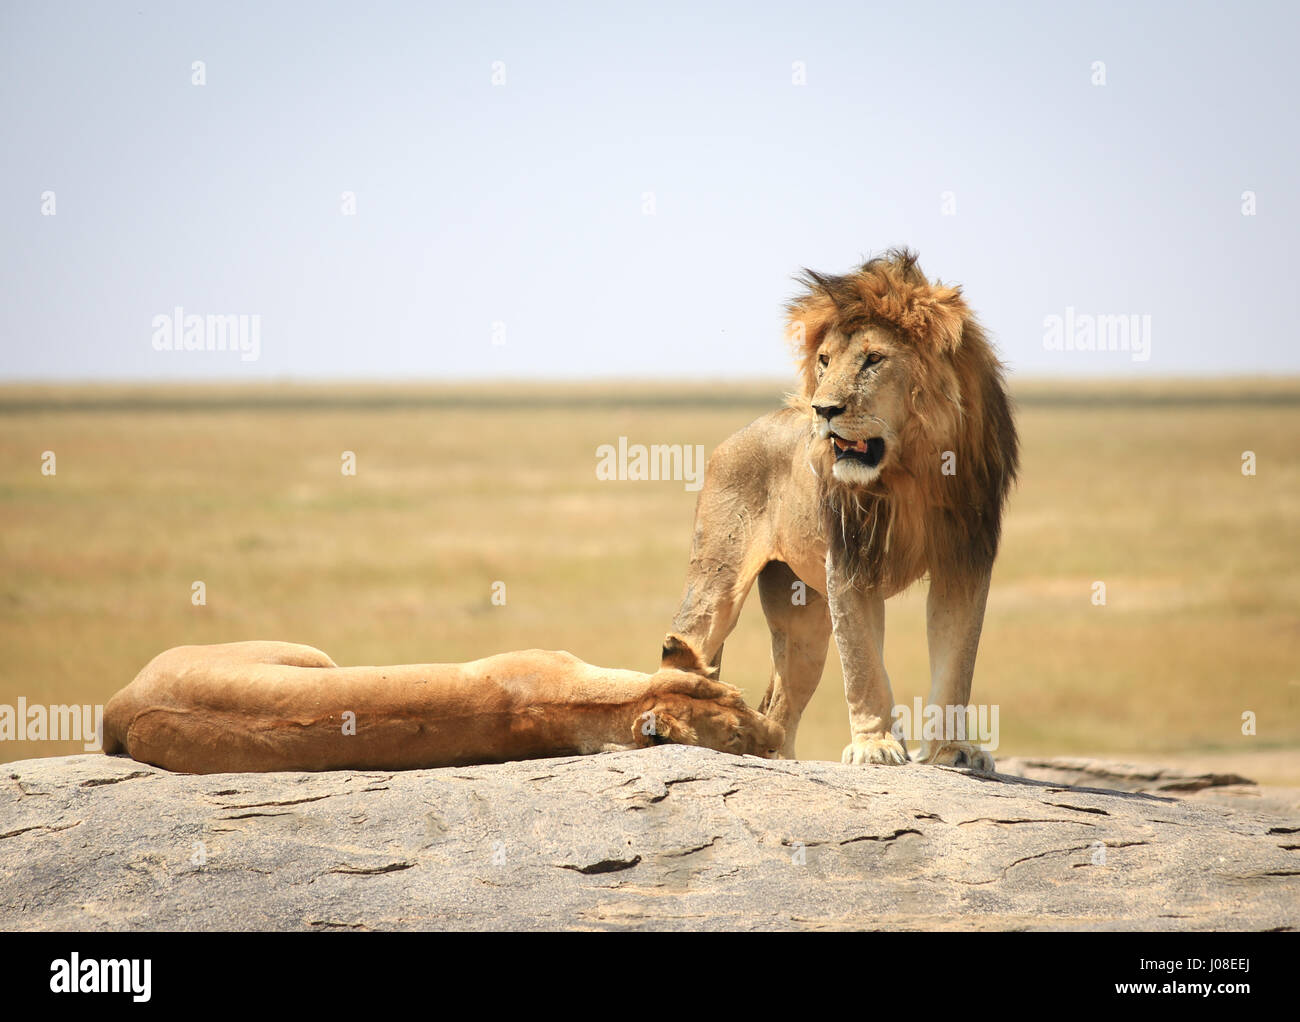 Family of lions in Serengeti, Tanzania Stock Photo